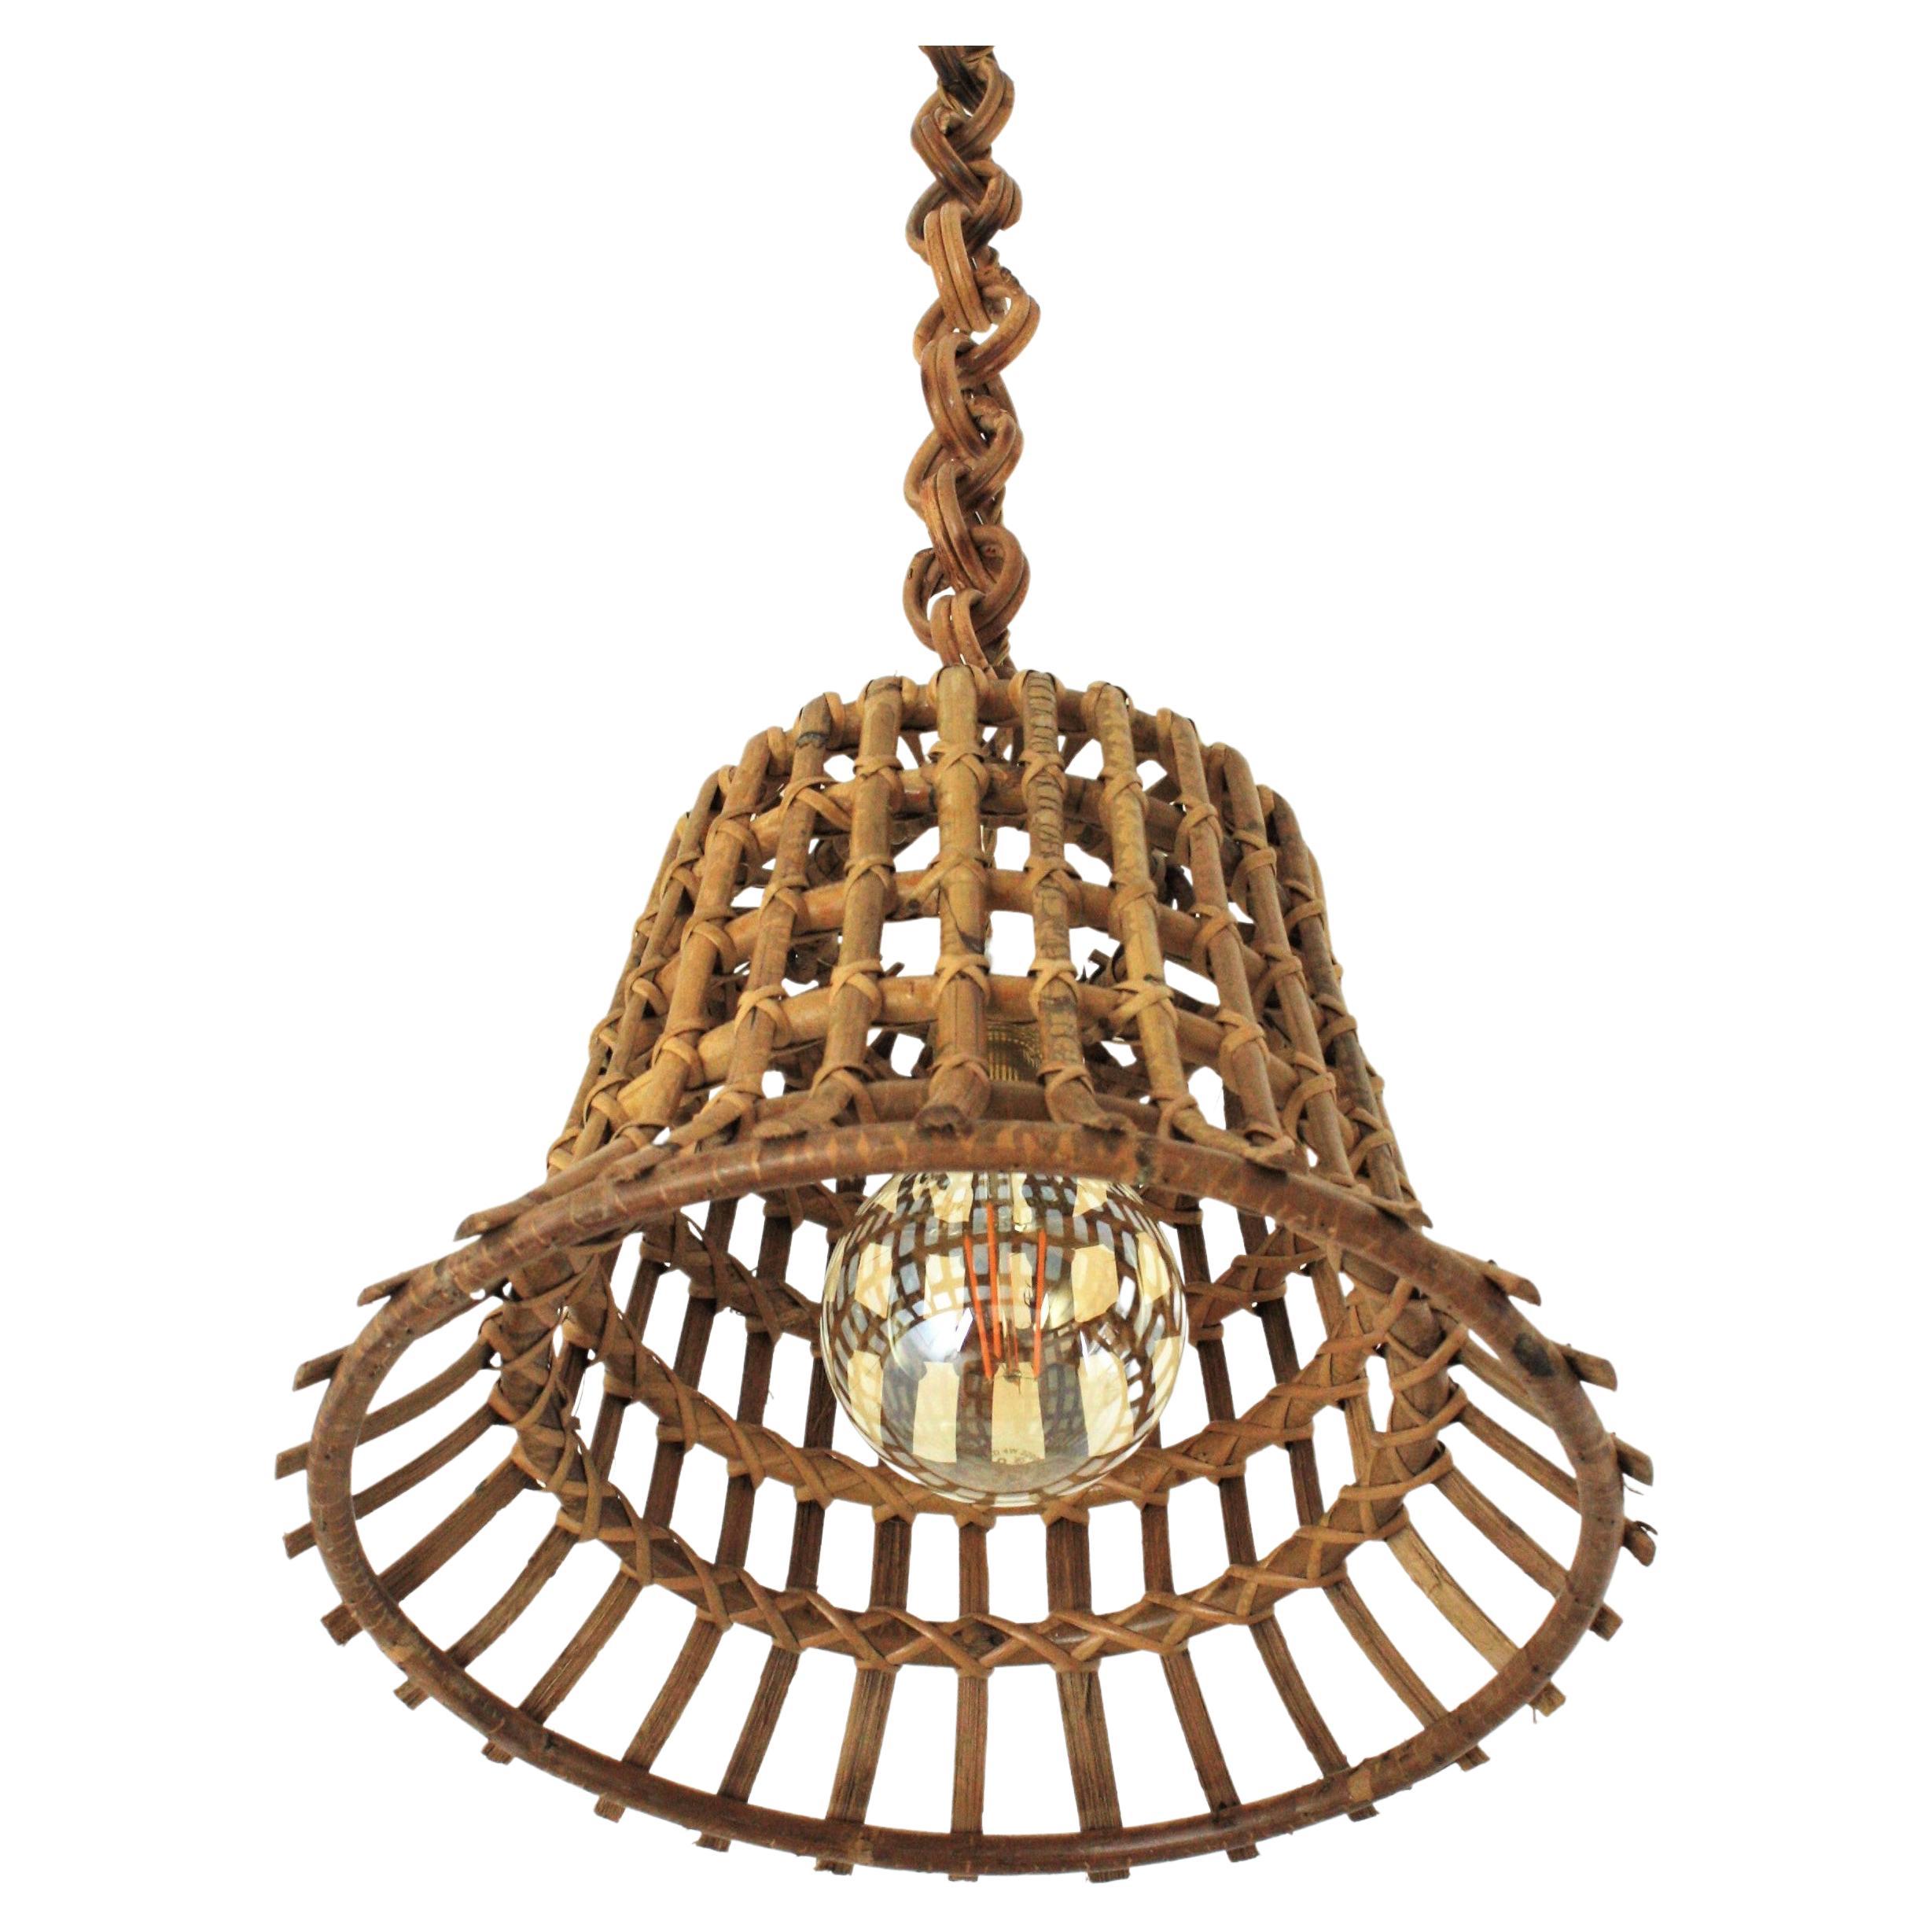 Grande lampe suspendue en rotin de la Côte d'Azur avec motif de panier grillagé, années 1960
Cette magnifique lampe à suspension a un abat-jour en forme de panier ou de cloche fait d'une intrication de cannes de rotin comme grille. Il est suspendu